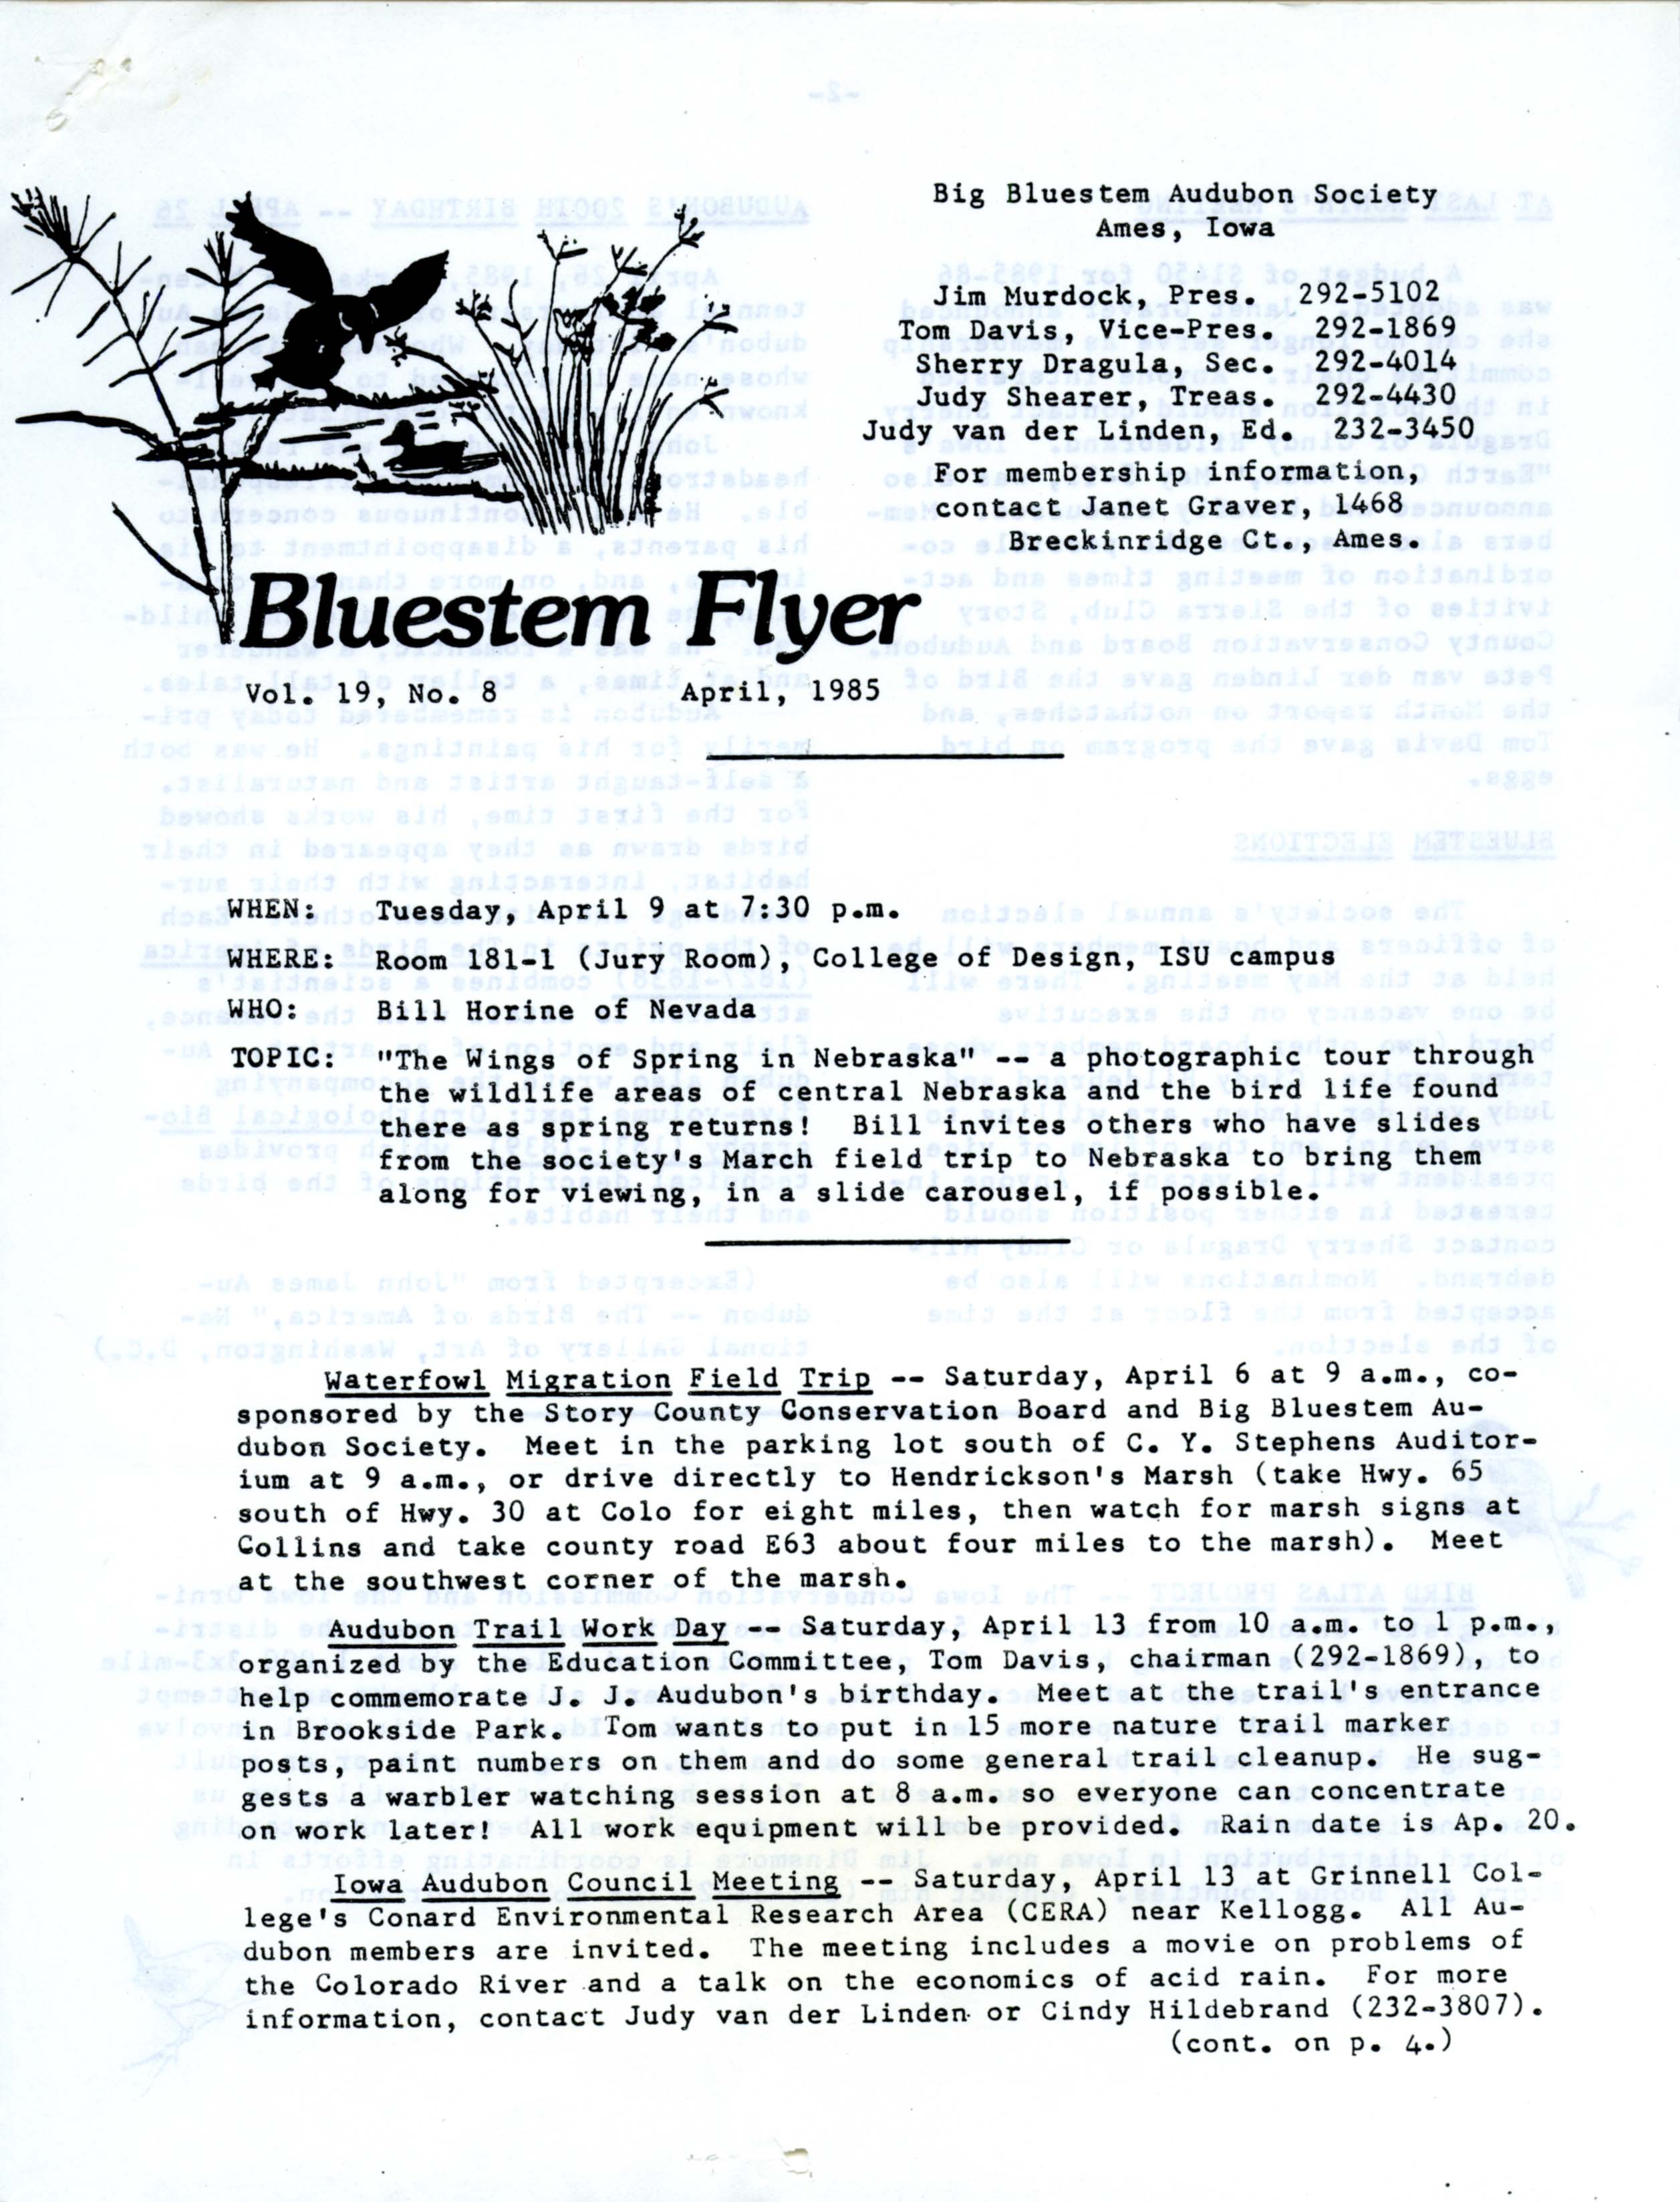 Bluestem Flyer, Volume 19, Number 8, April 1985